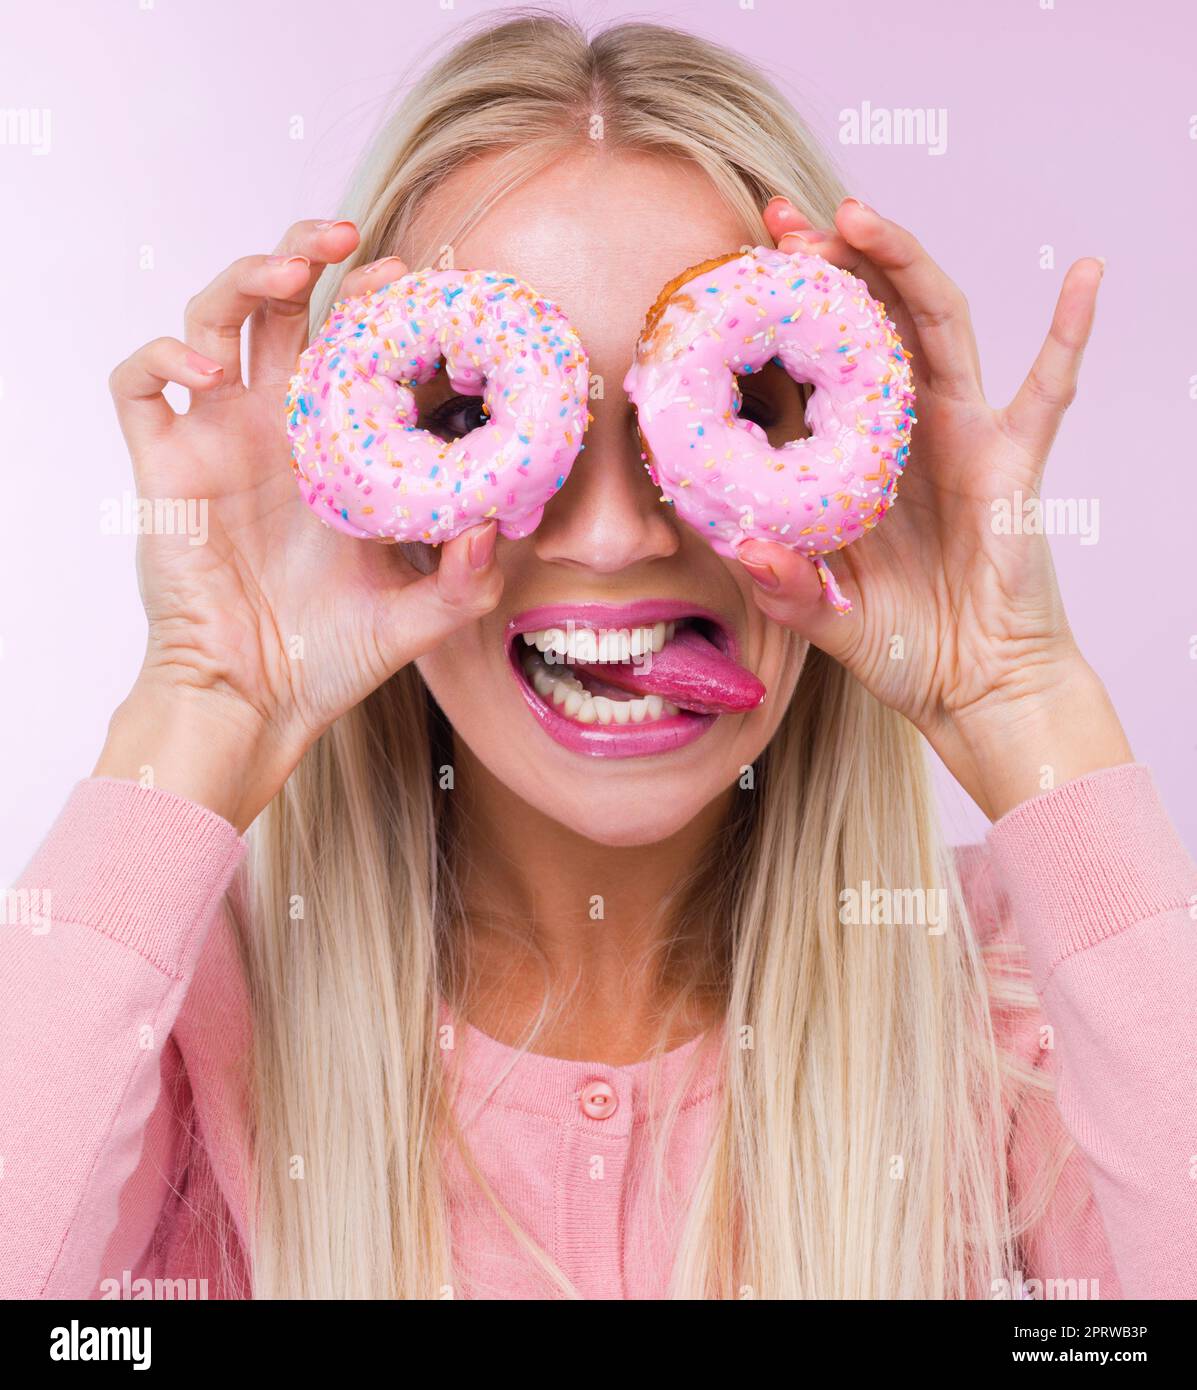 Eine Frau, die Donuts vor ihren Augen hält, während sie auf Rosa isoliert ist. Stockfoto